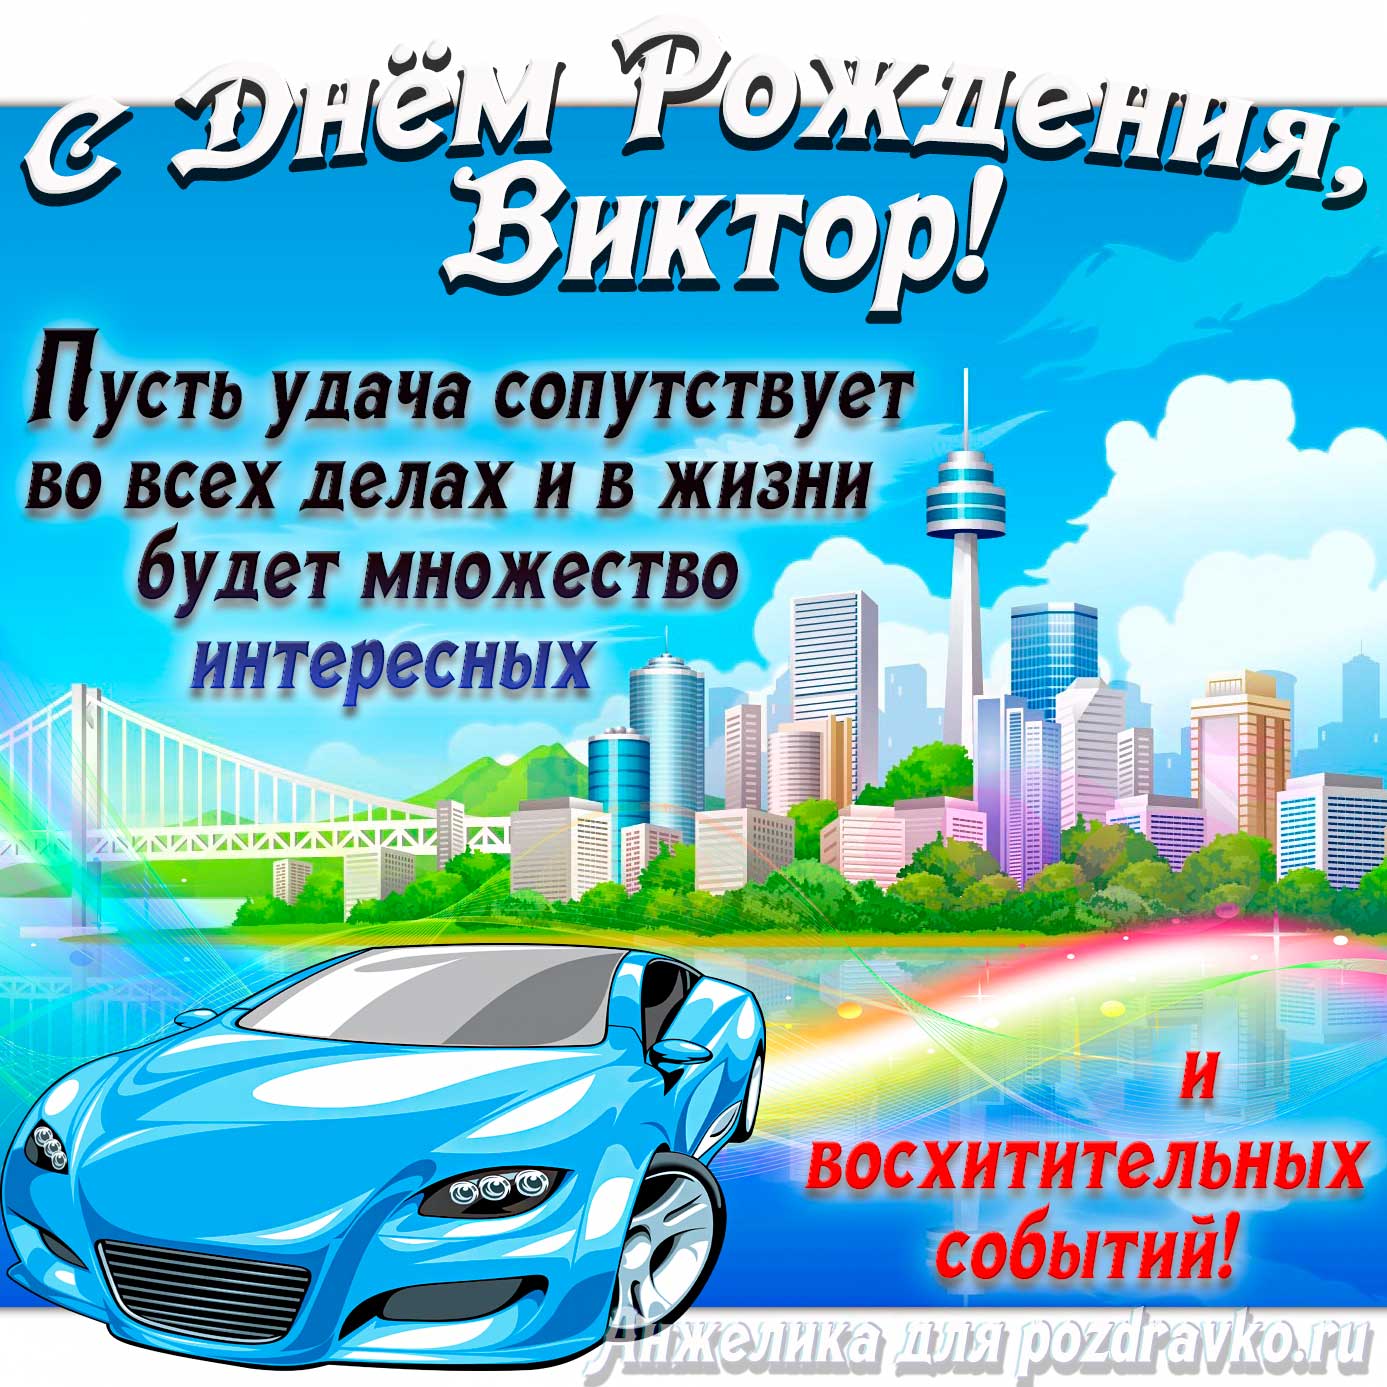 Открытка - с Днём Рождения Виктор с голубой машиной и пожеланием. Скачать бесплатно или отправить картинку.